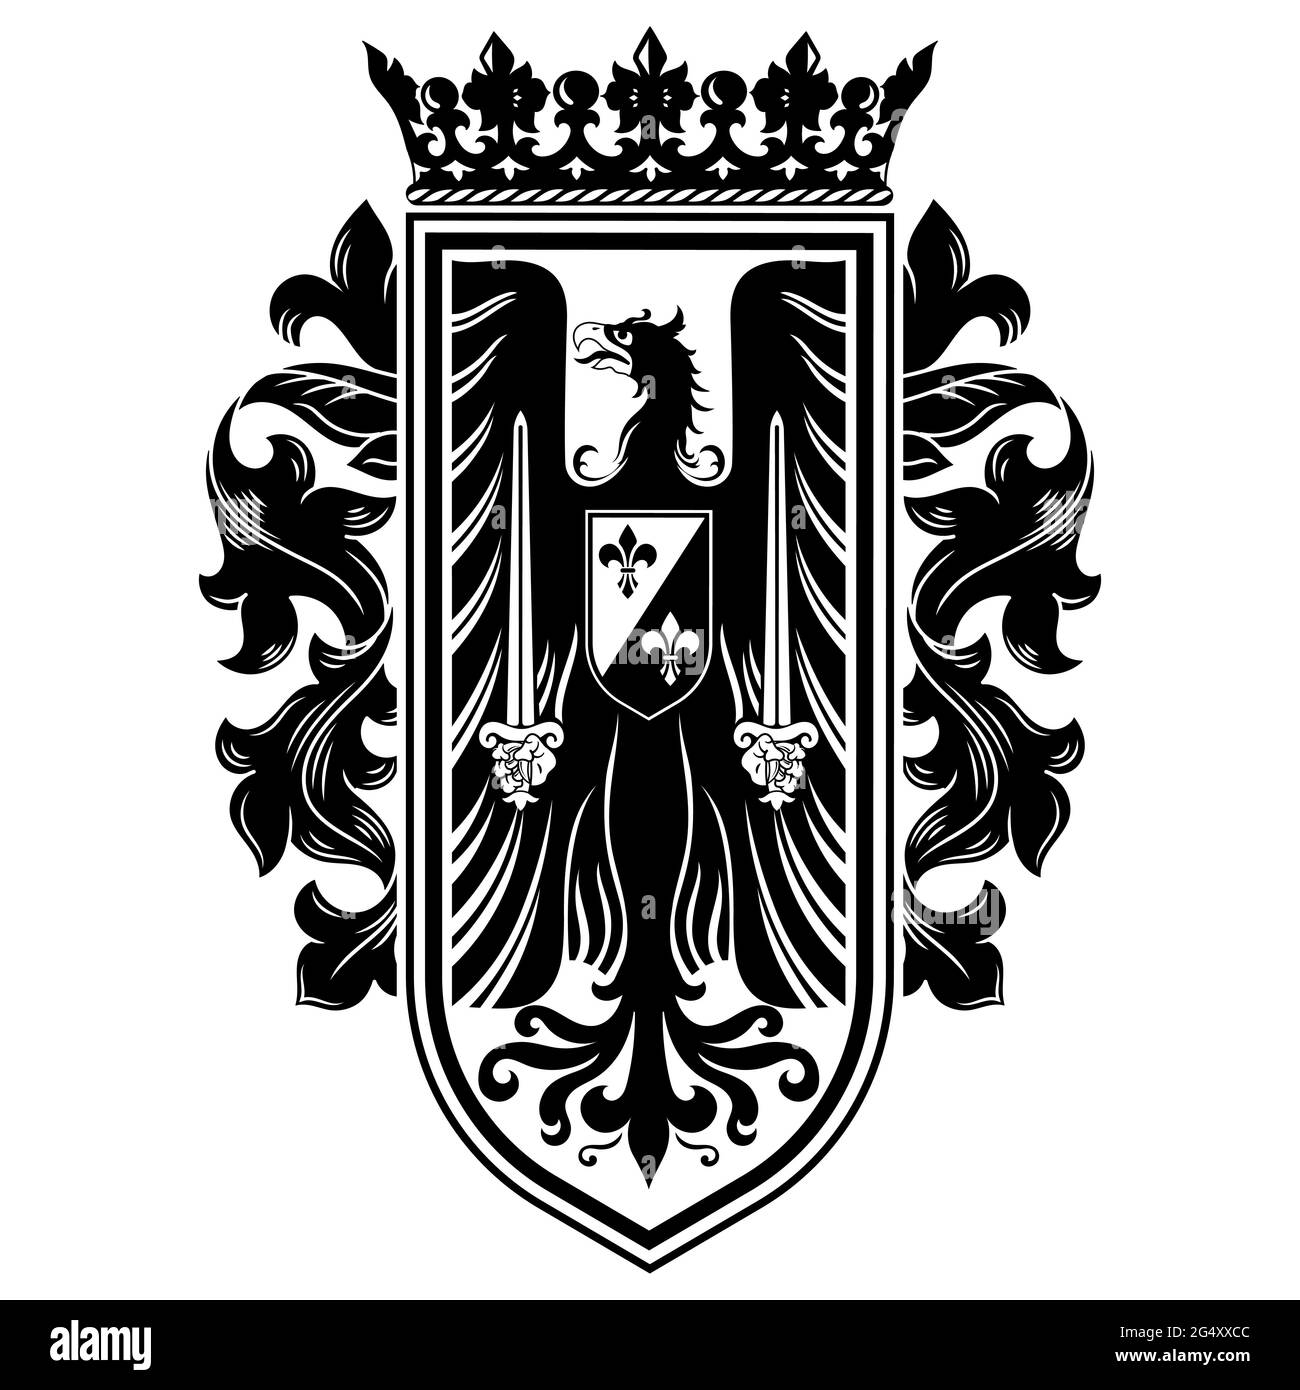 Ritterdesign. Mittelalterliches Wappentier, Wappadler und Ritterschild Stock Vektor